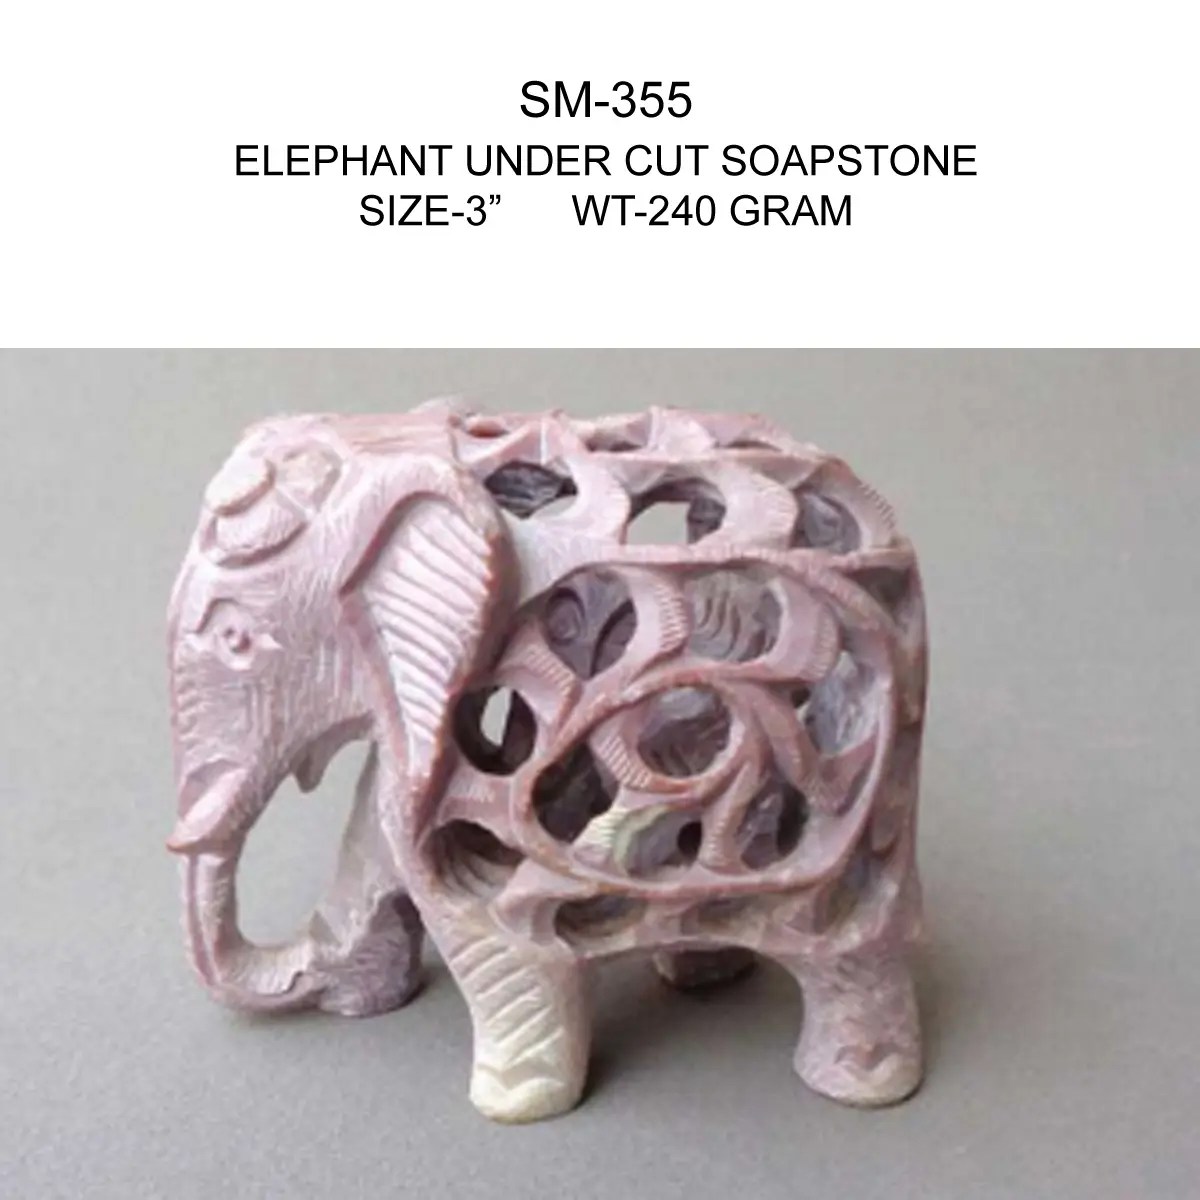 ELEPHANT UNDER CUT SOAPSTONE